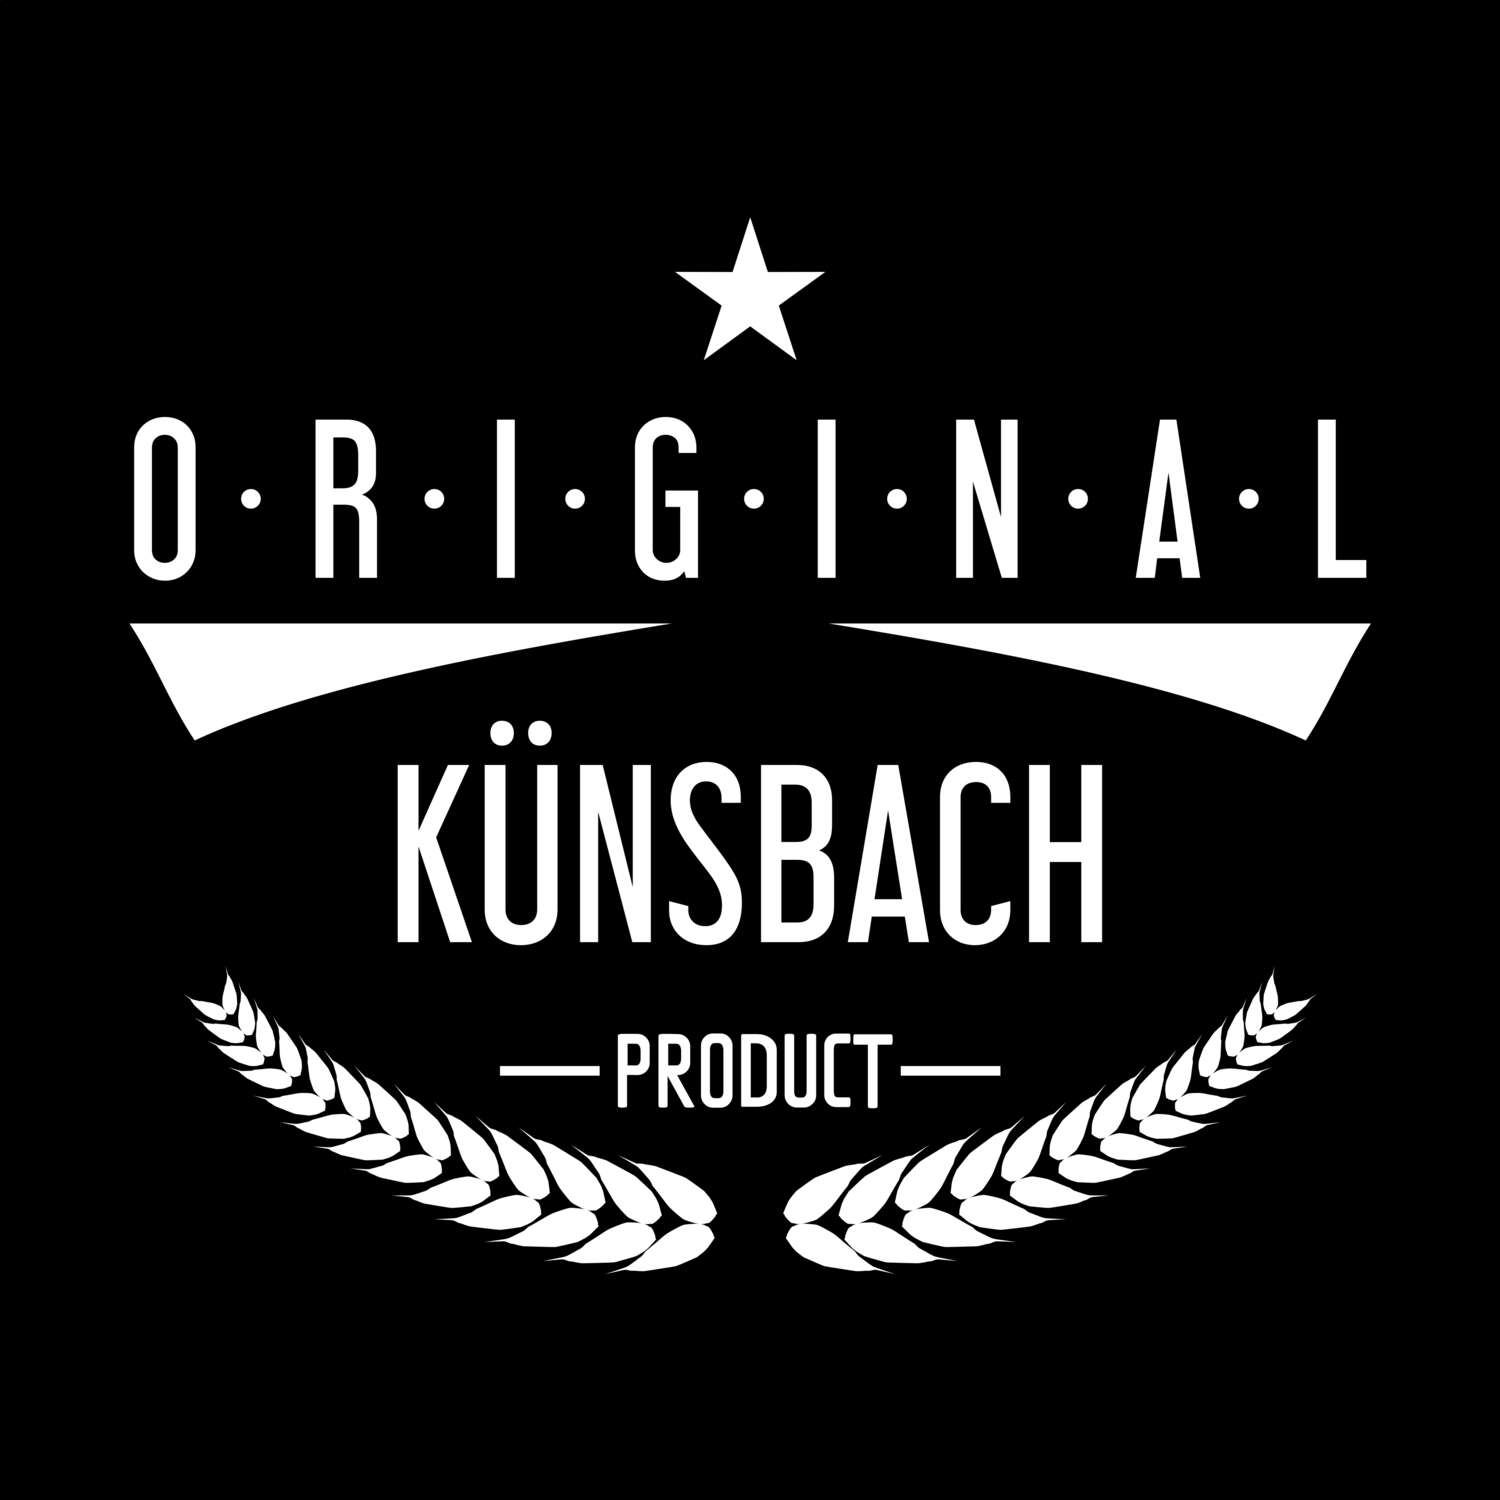 Künsbach T-Shirt »Original Product«